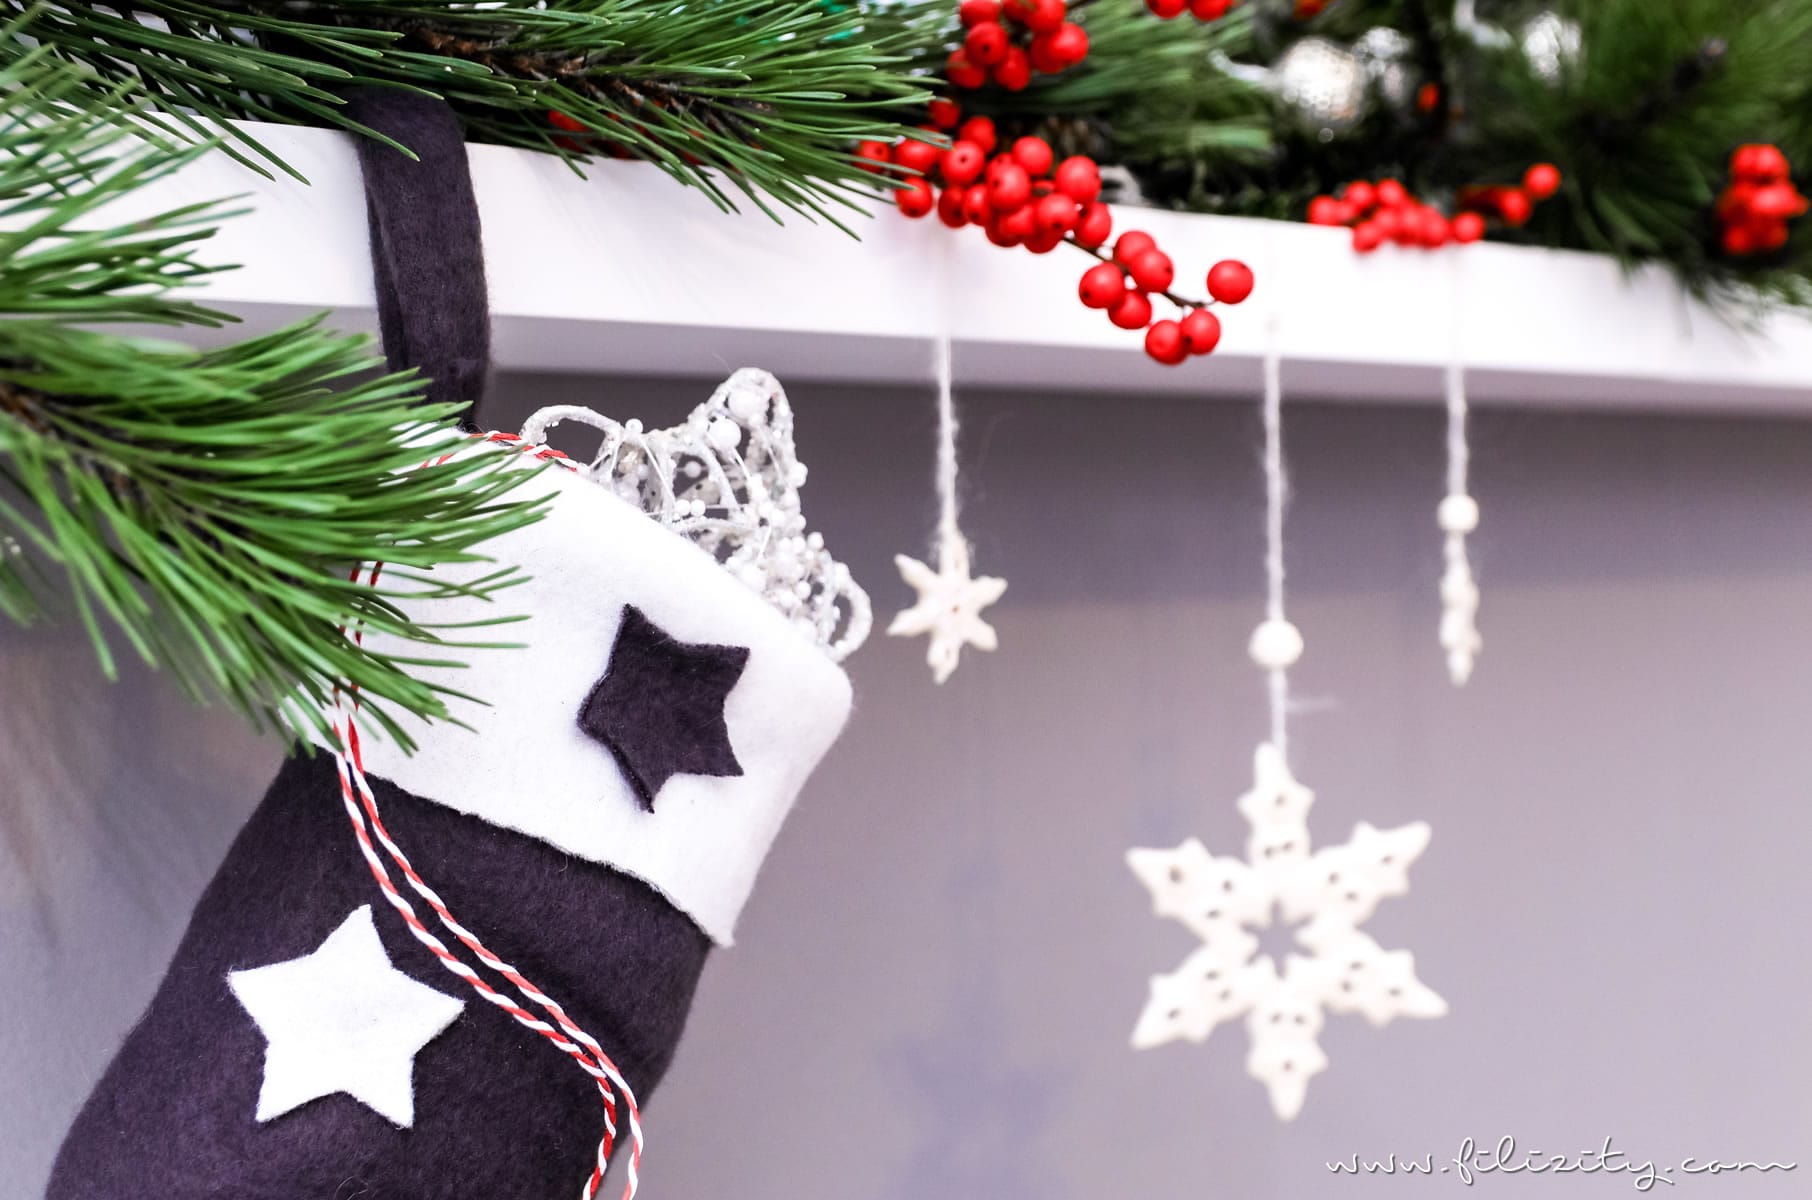 Basteln in der Weihnachtszeit: Nikolausstiefel nähen | Filizity.com | DIY-Blog aus dem Rheinland #weihnachten #nikolaus #nähen #geschenkideen